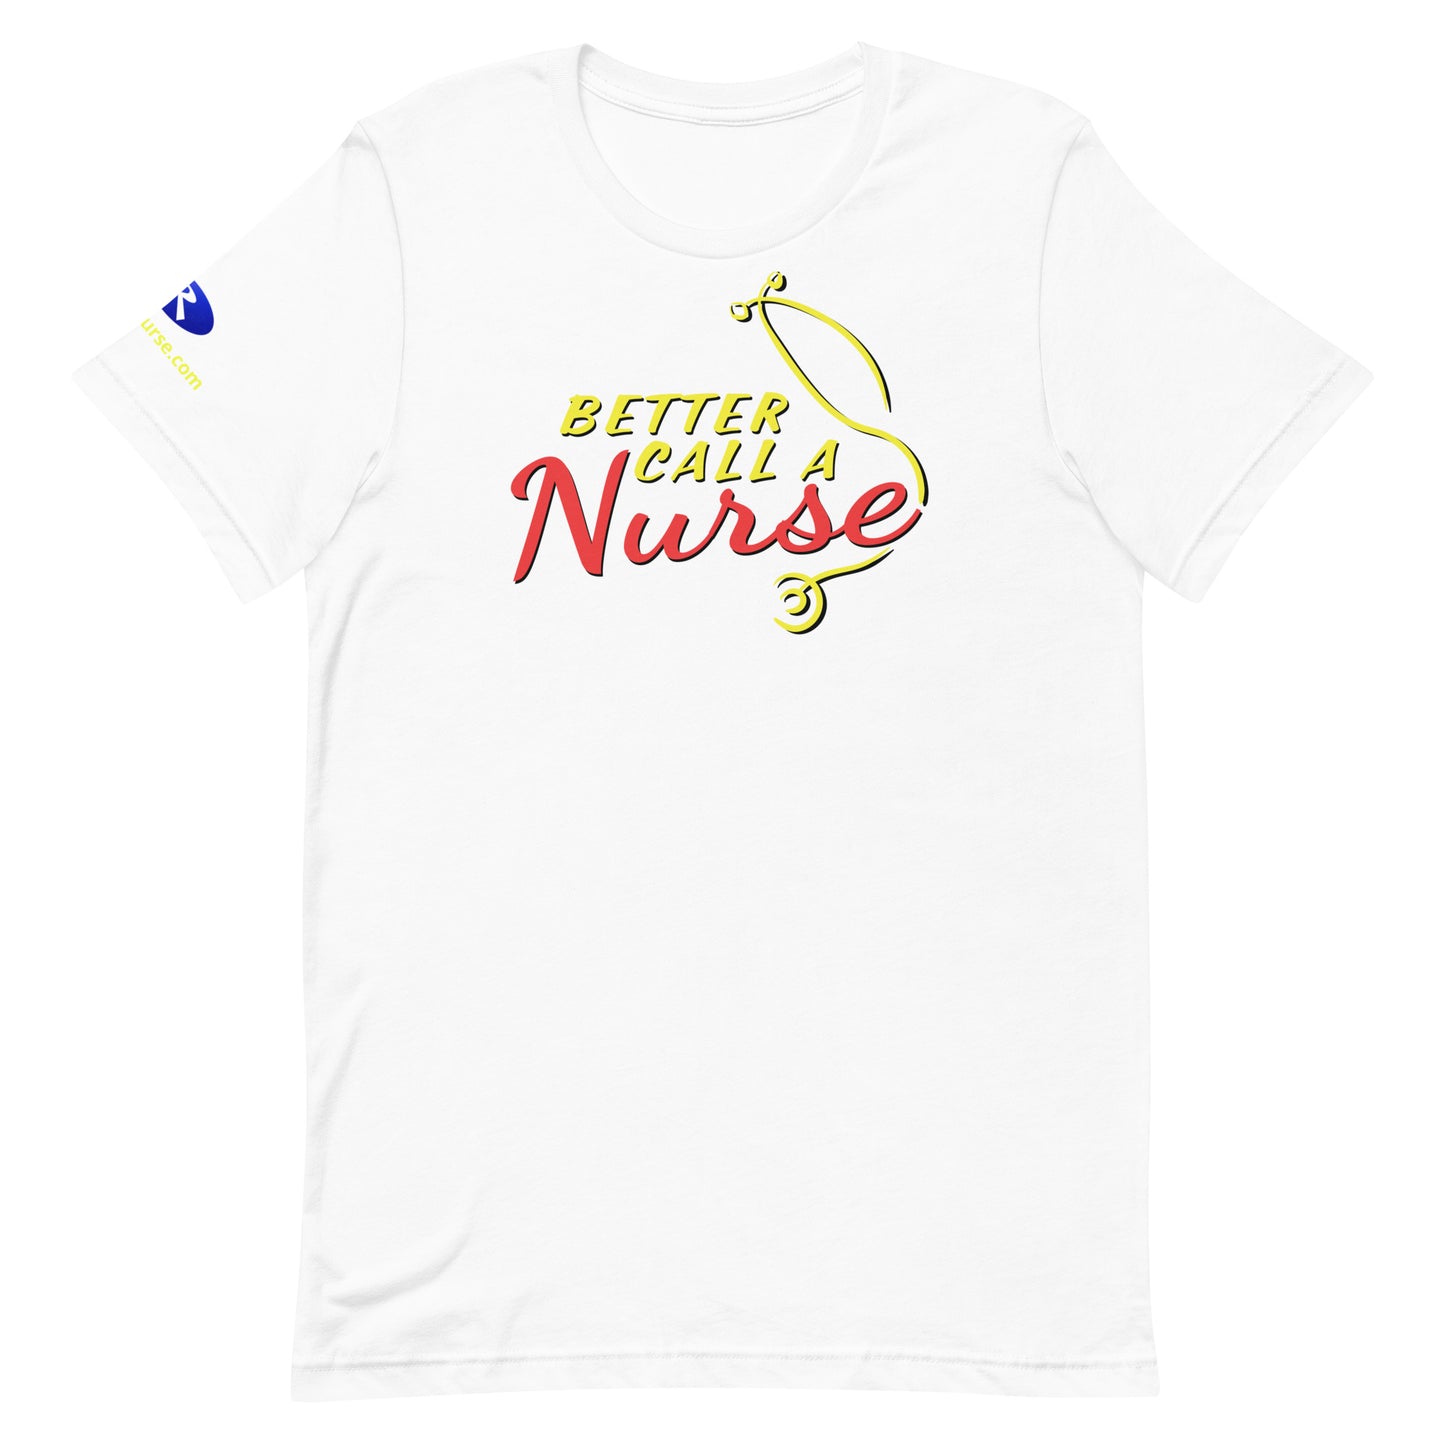 Better Call a Nurse! (Unisex Fit T-Shirt)